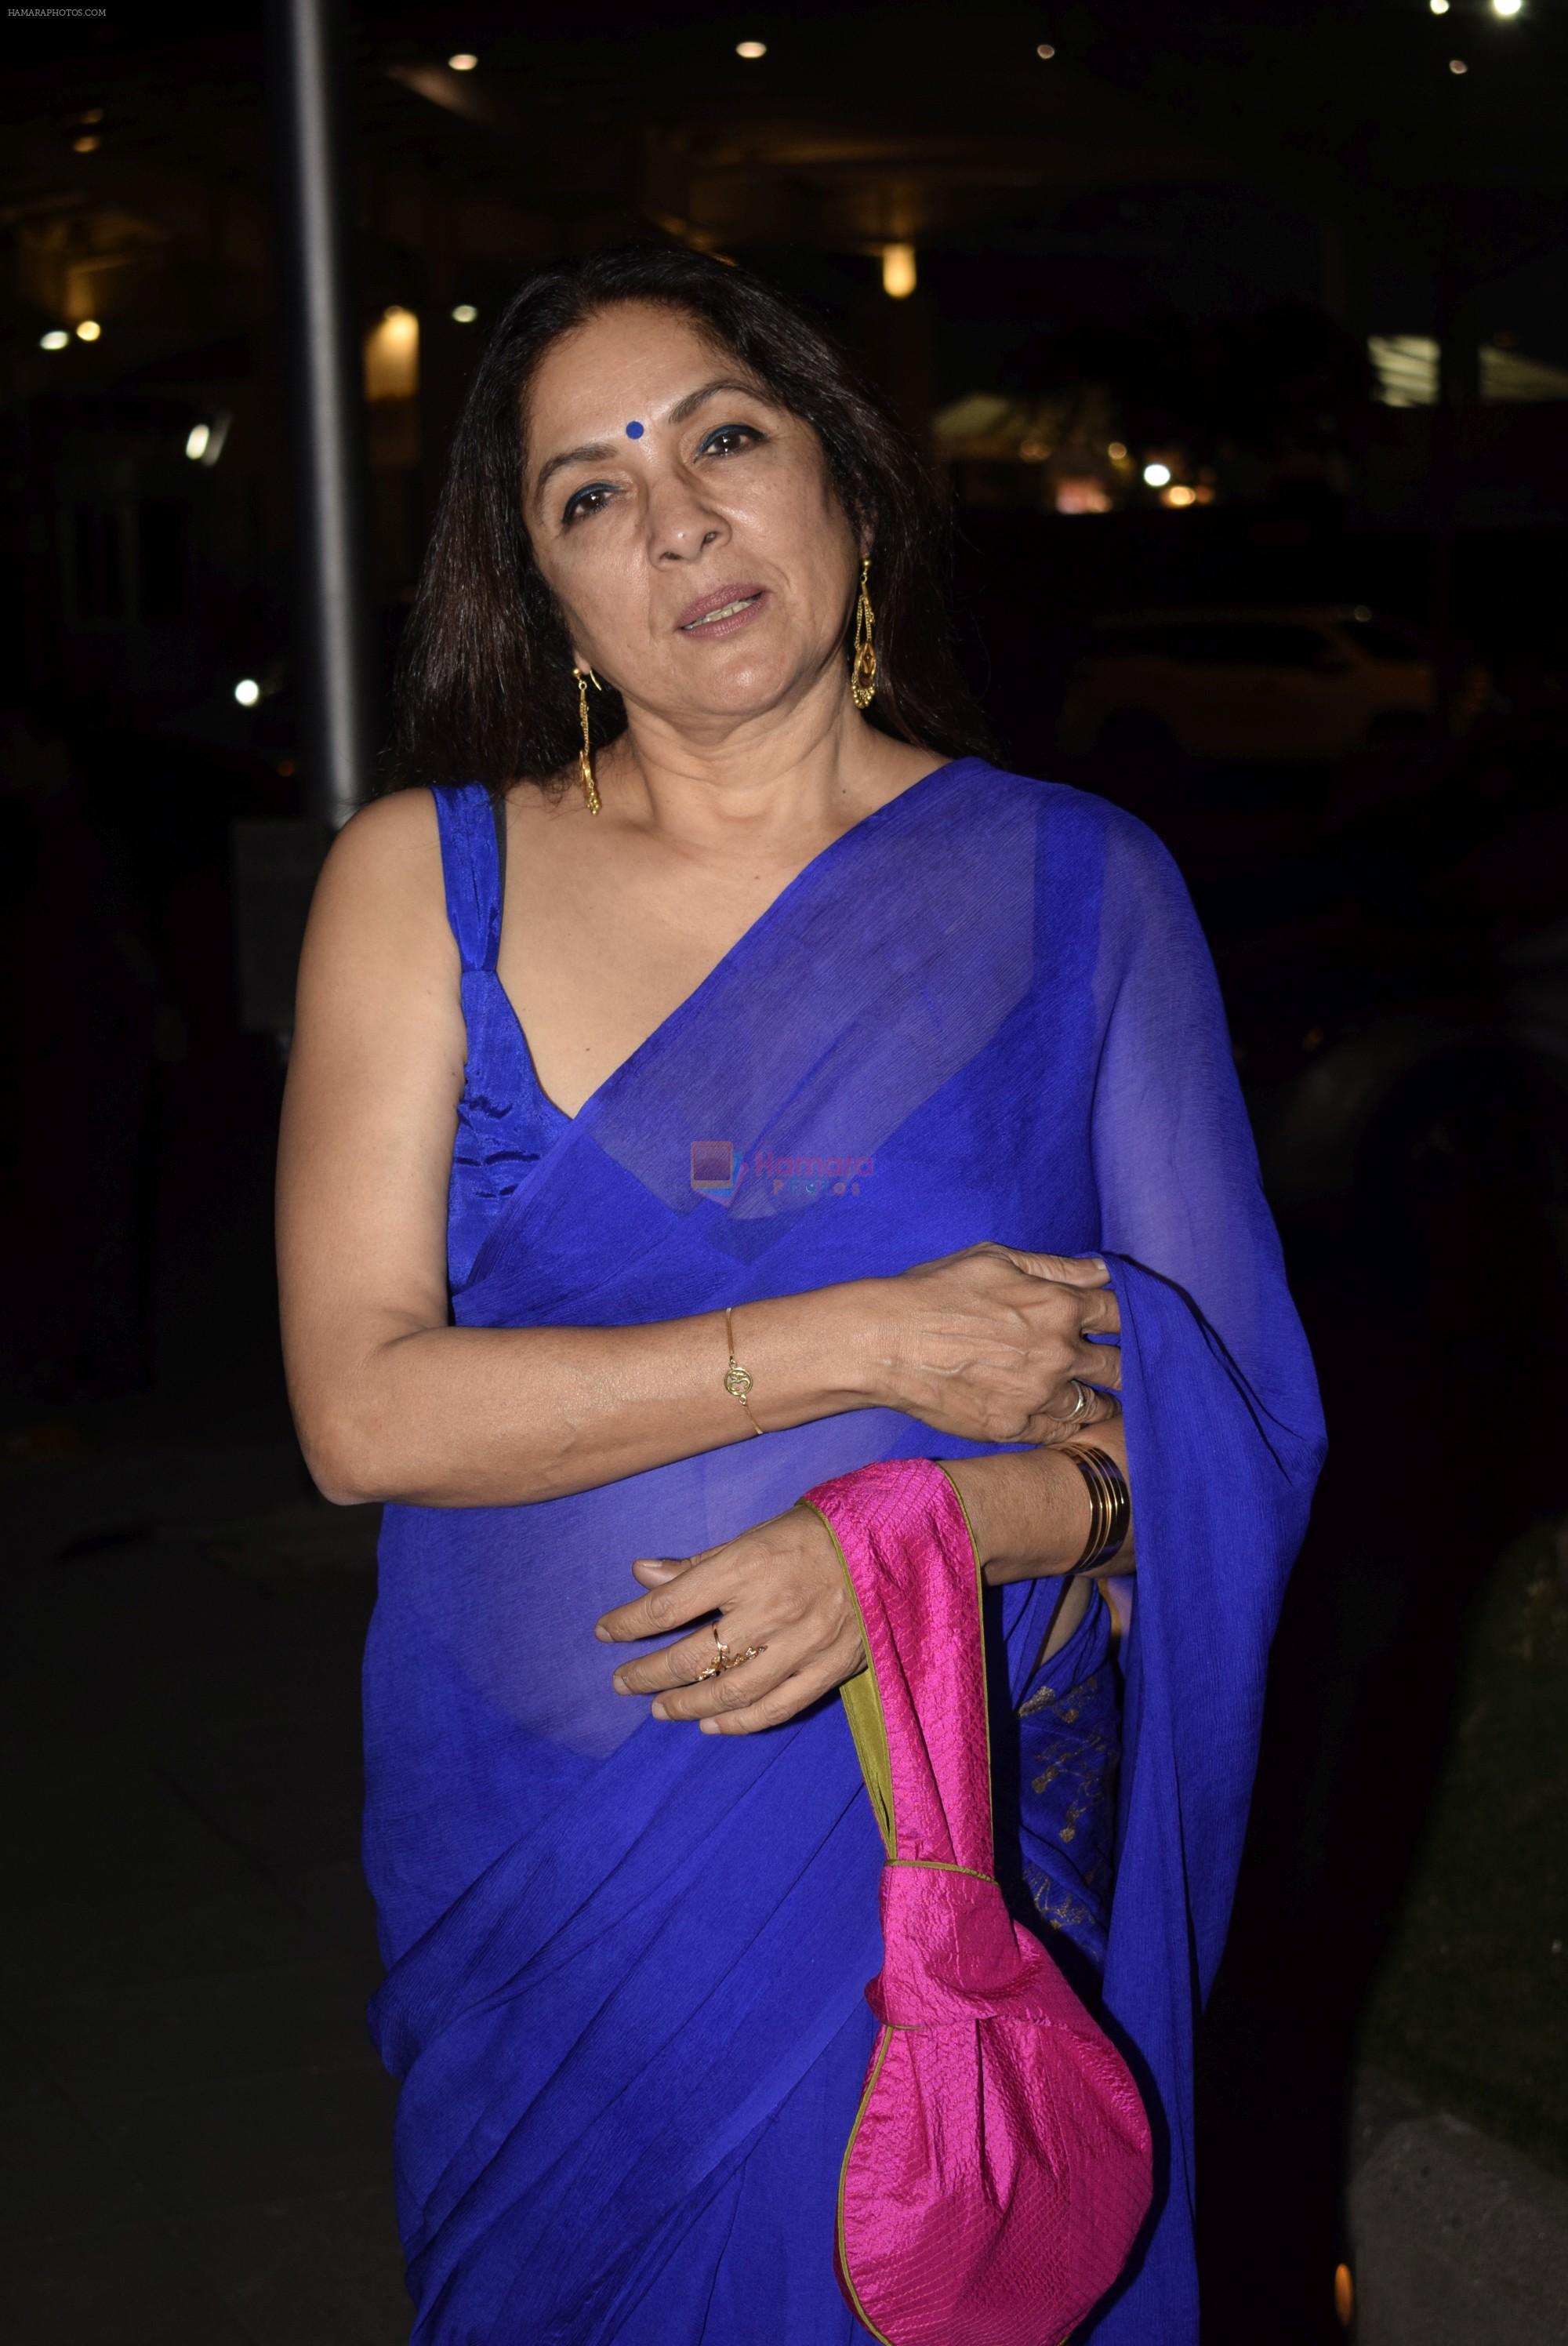 Neena Gupta at Masaba Gupta's party at Yautcha in bkc on 2nd Feb 2019